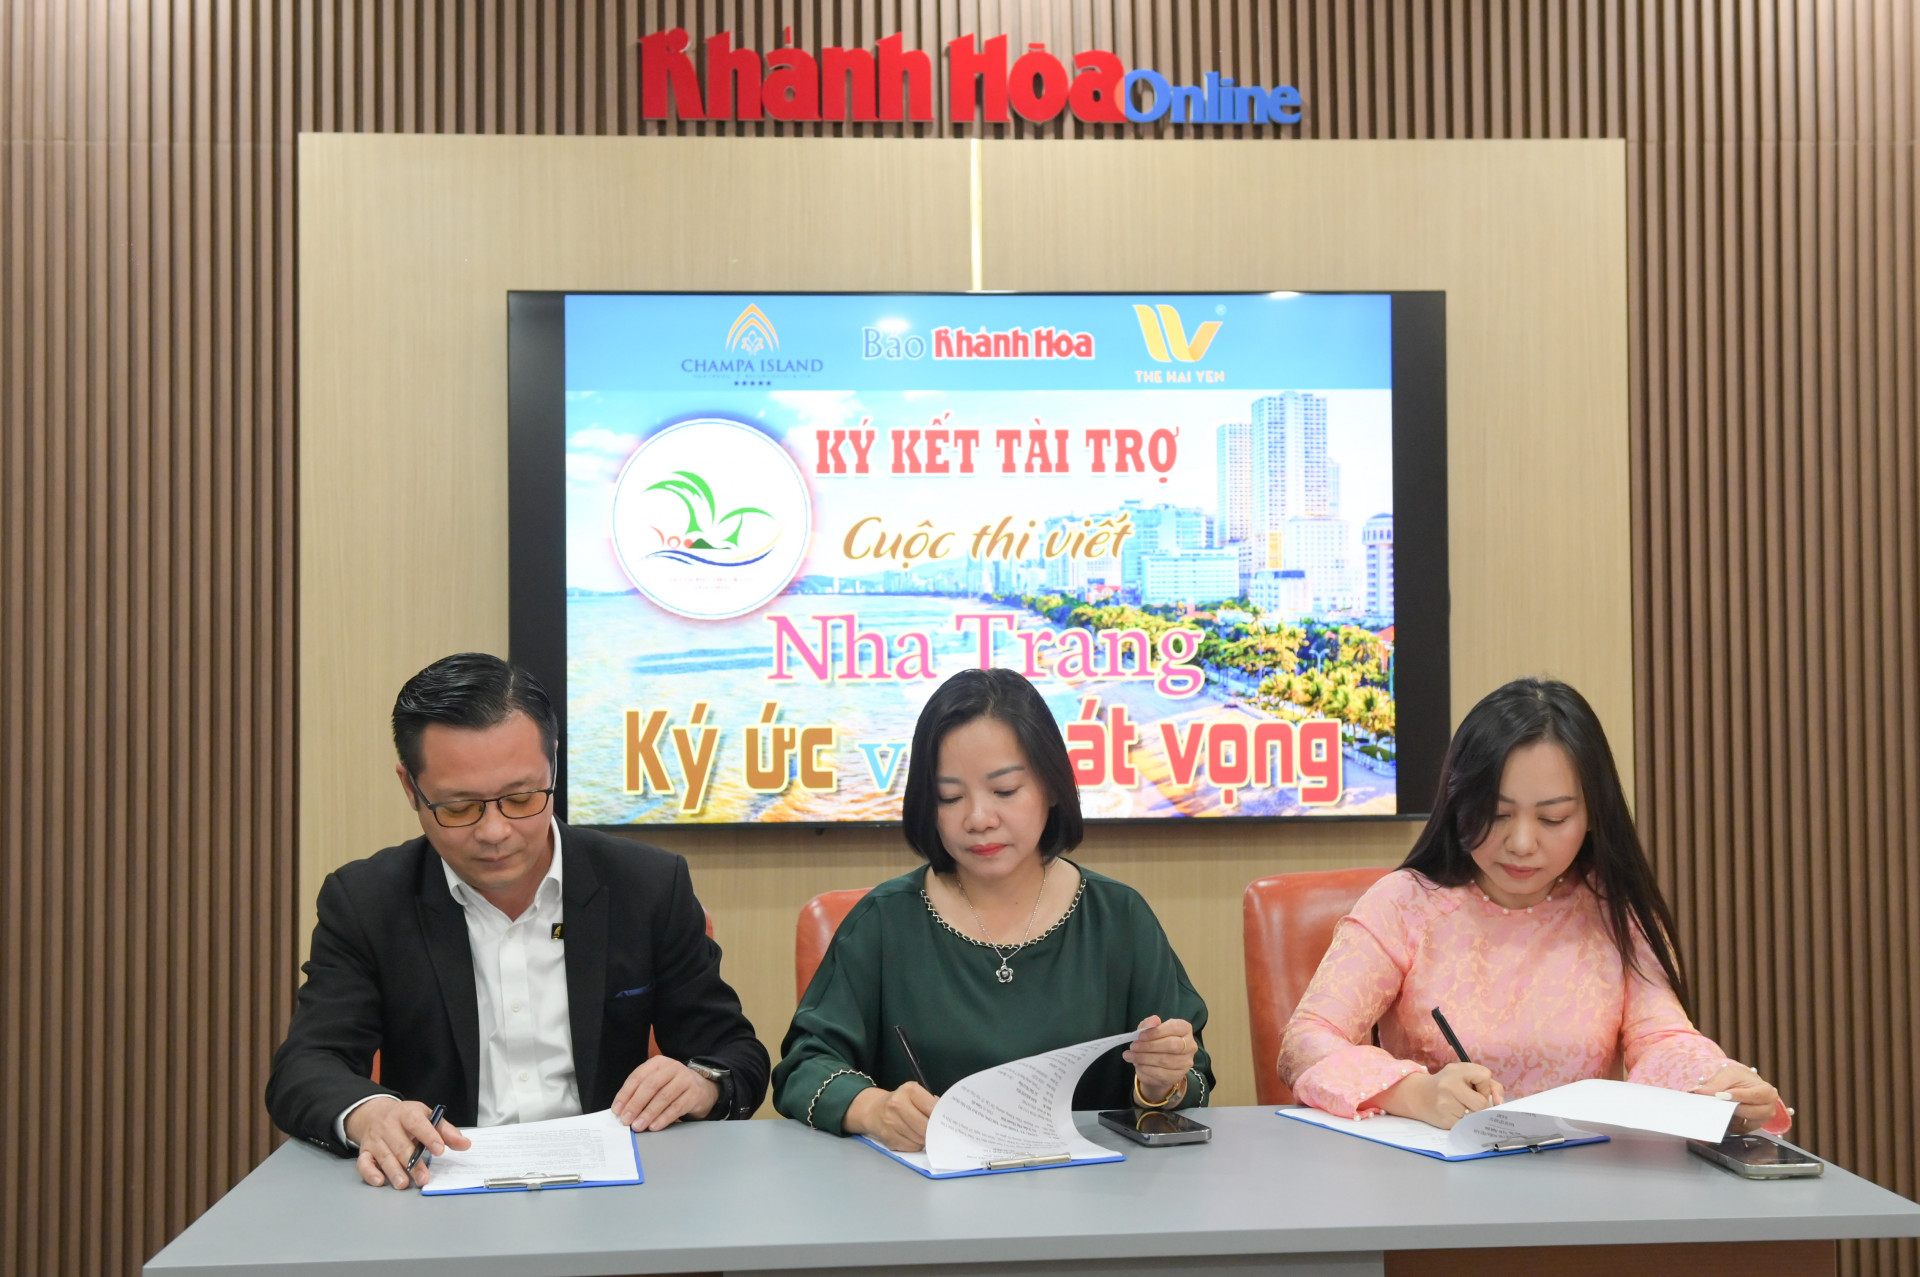 Bà Thái Thị Lệ Hằng - Tổng Biên Tập Báo Khánh Hoà (ở giữa) cùng lãnh đạo hai doanh nghiệp ký kết hợp tác tài trợ.